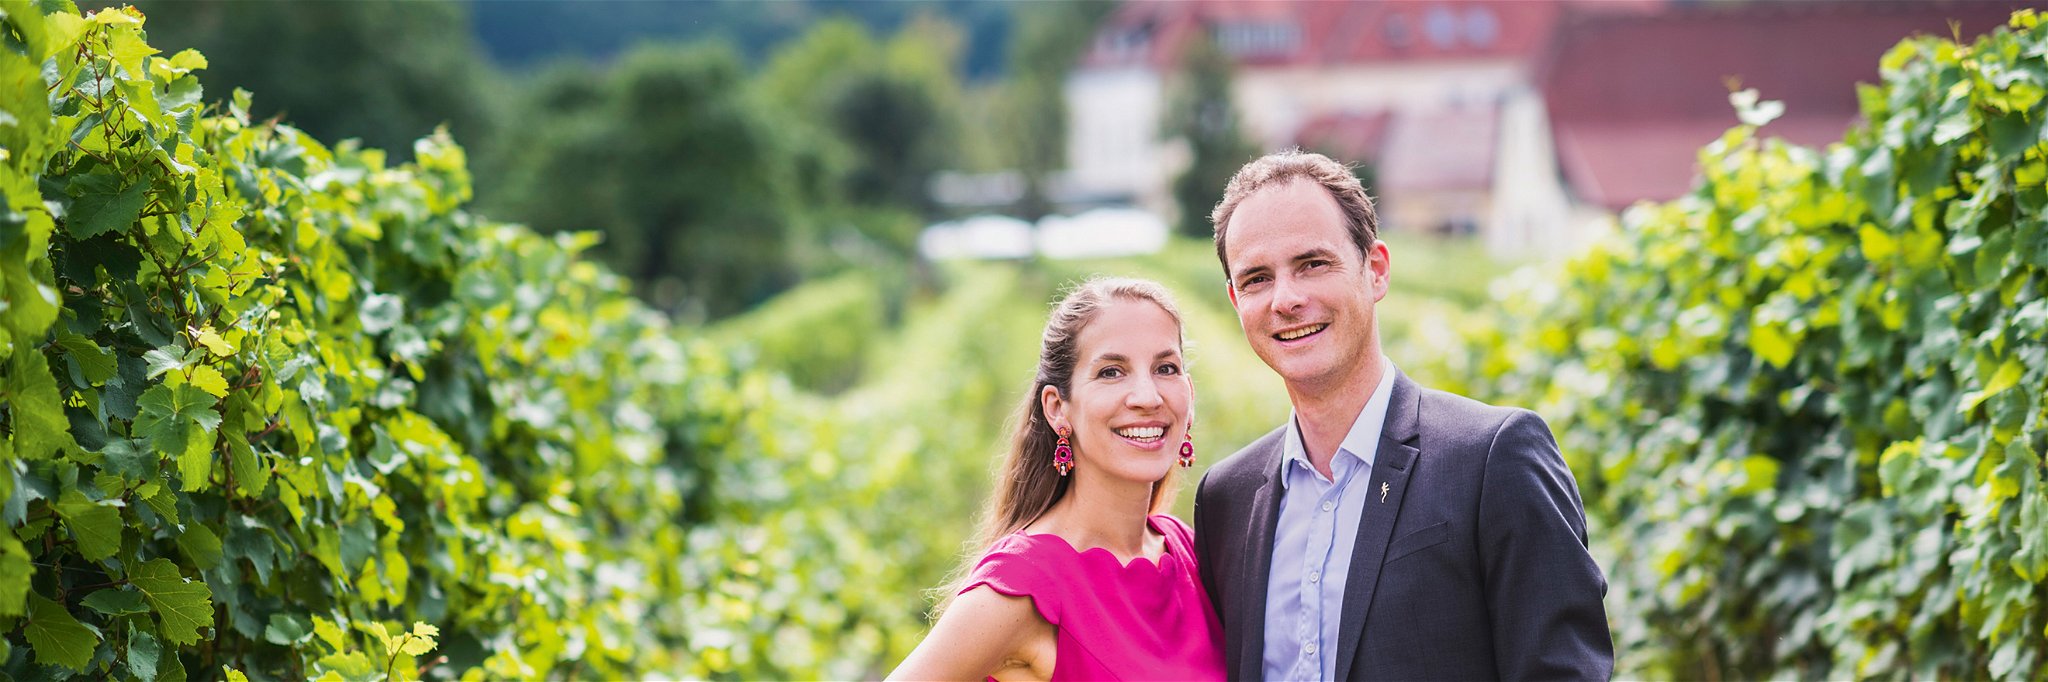 Julia und Herwig Jamek führen das bekannte Weingut in Joching.